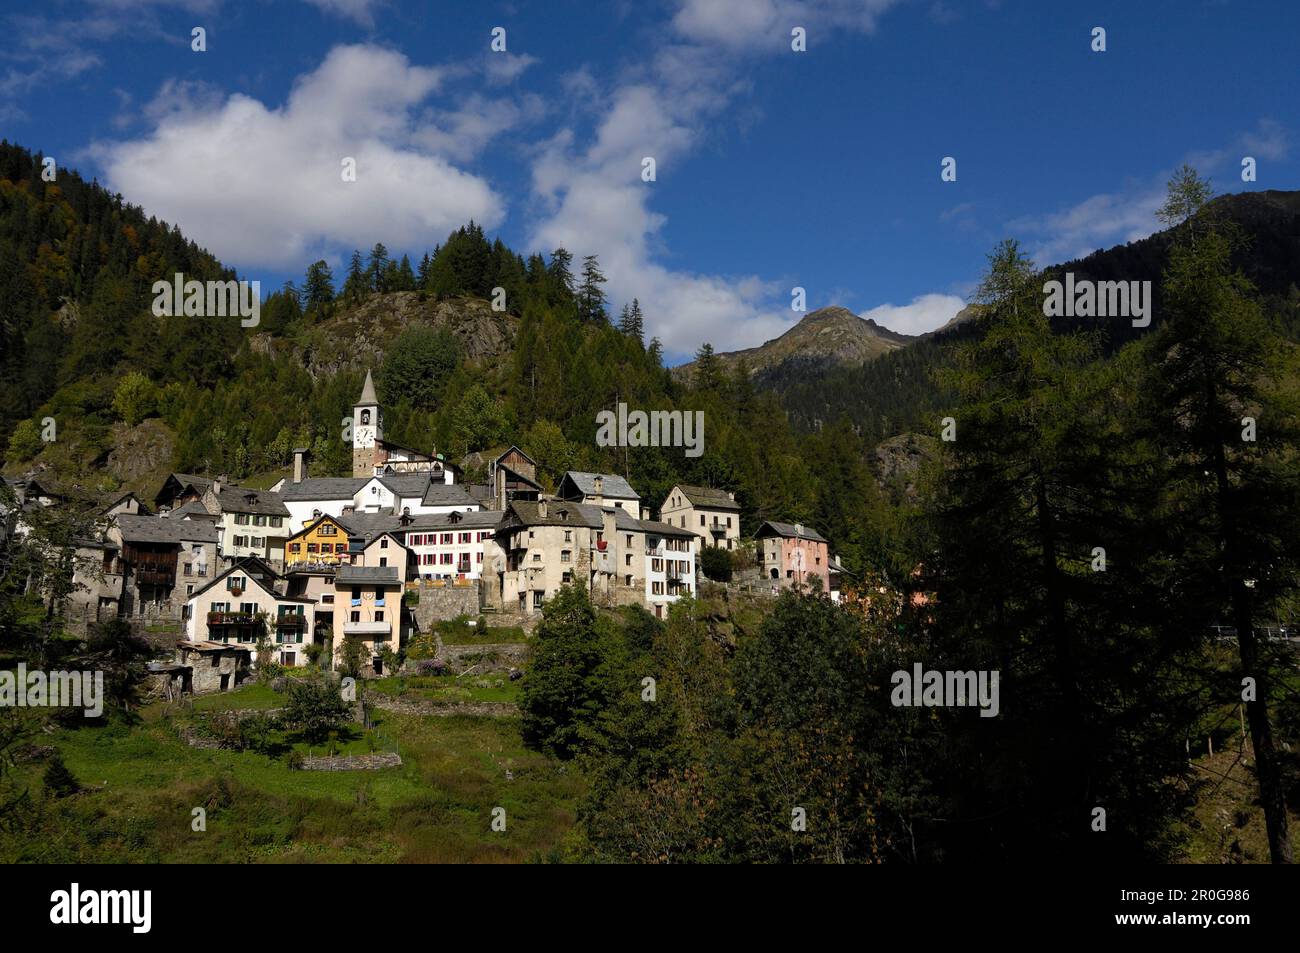 The village of Fusio in Val Lavizzara, in Maggia Valley, Valle Maggia, Ticino, Switzerland Stock Photo